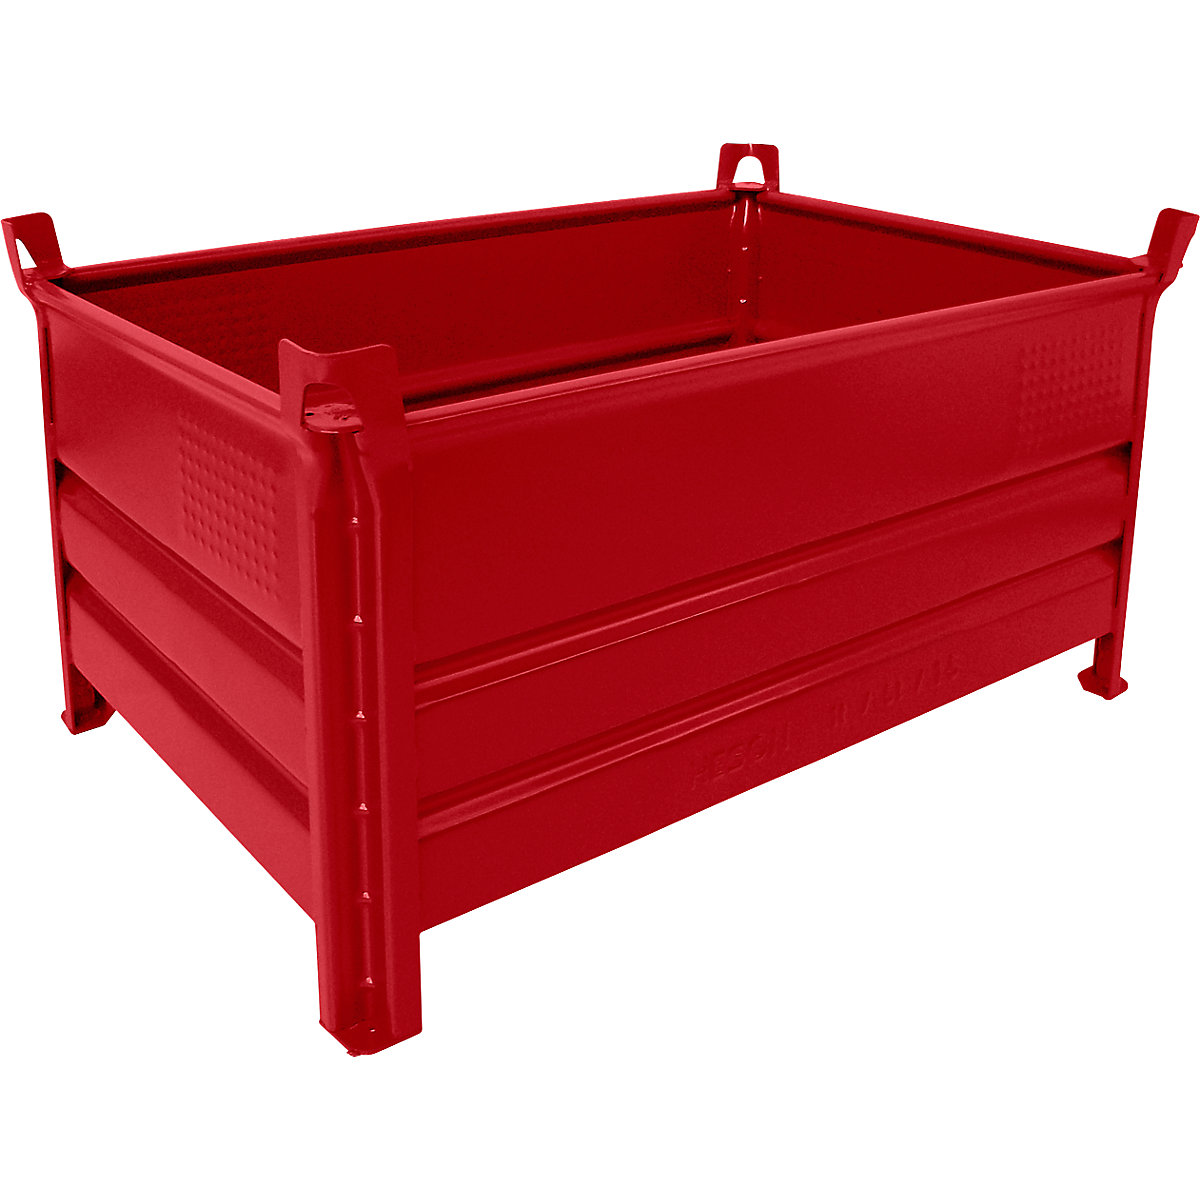 Pojemnik do ustawiania w stos z pełnymi ściankami – Heson, szer. x dł. 800 x 1200 mm, nośność 2000 kg, czerwony, od 1 szt.-8